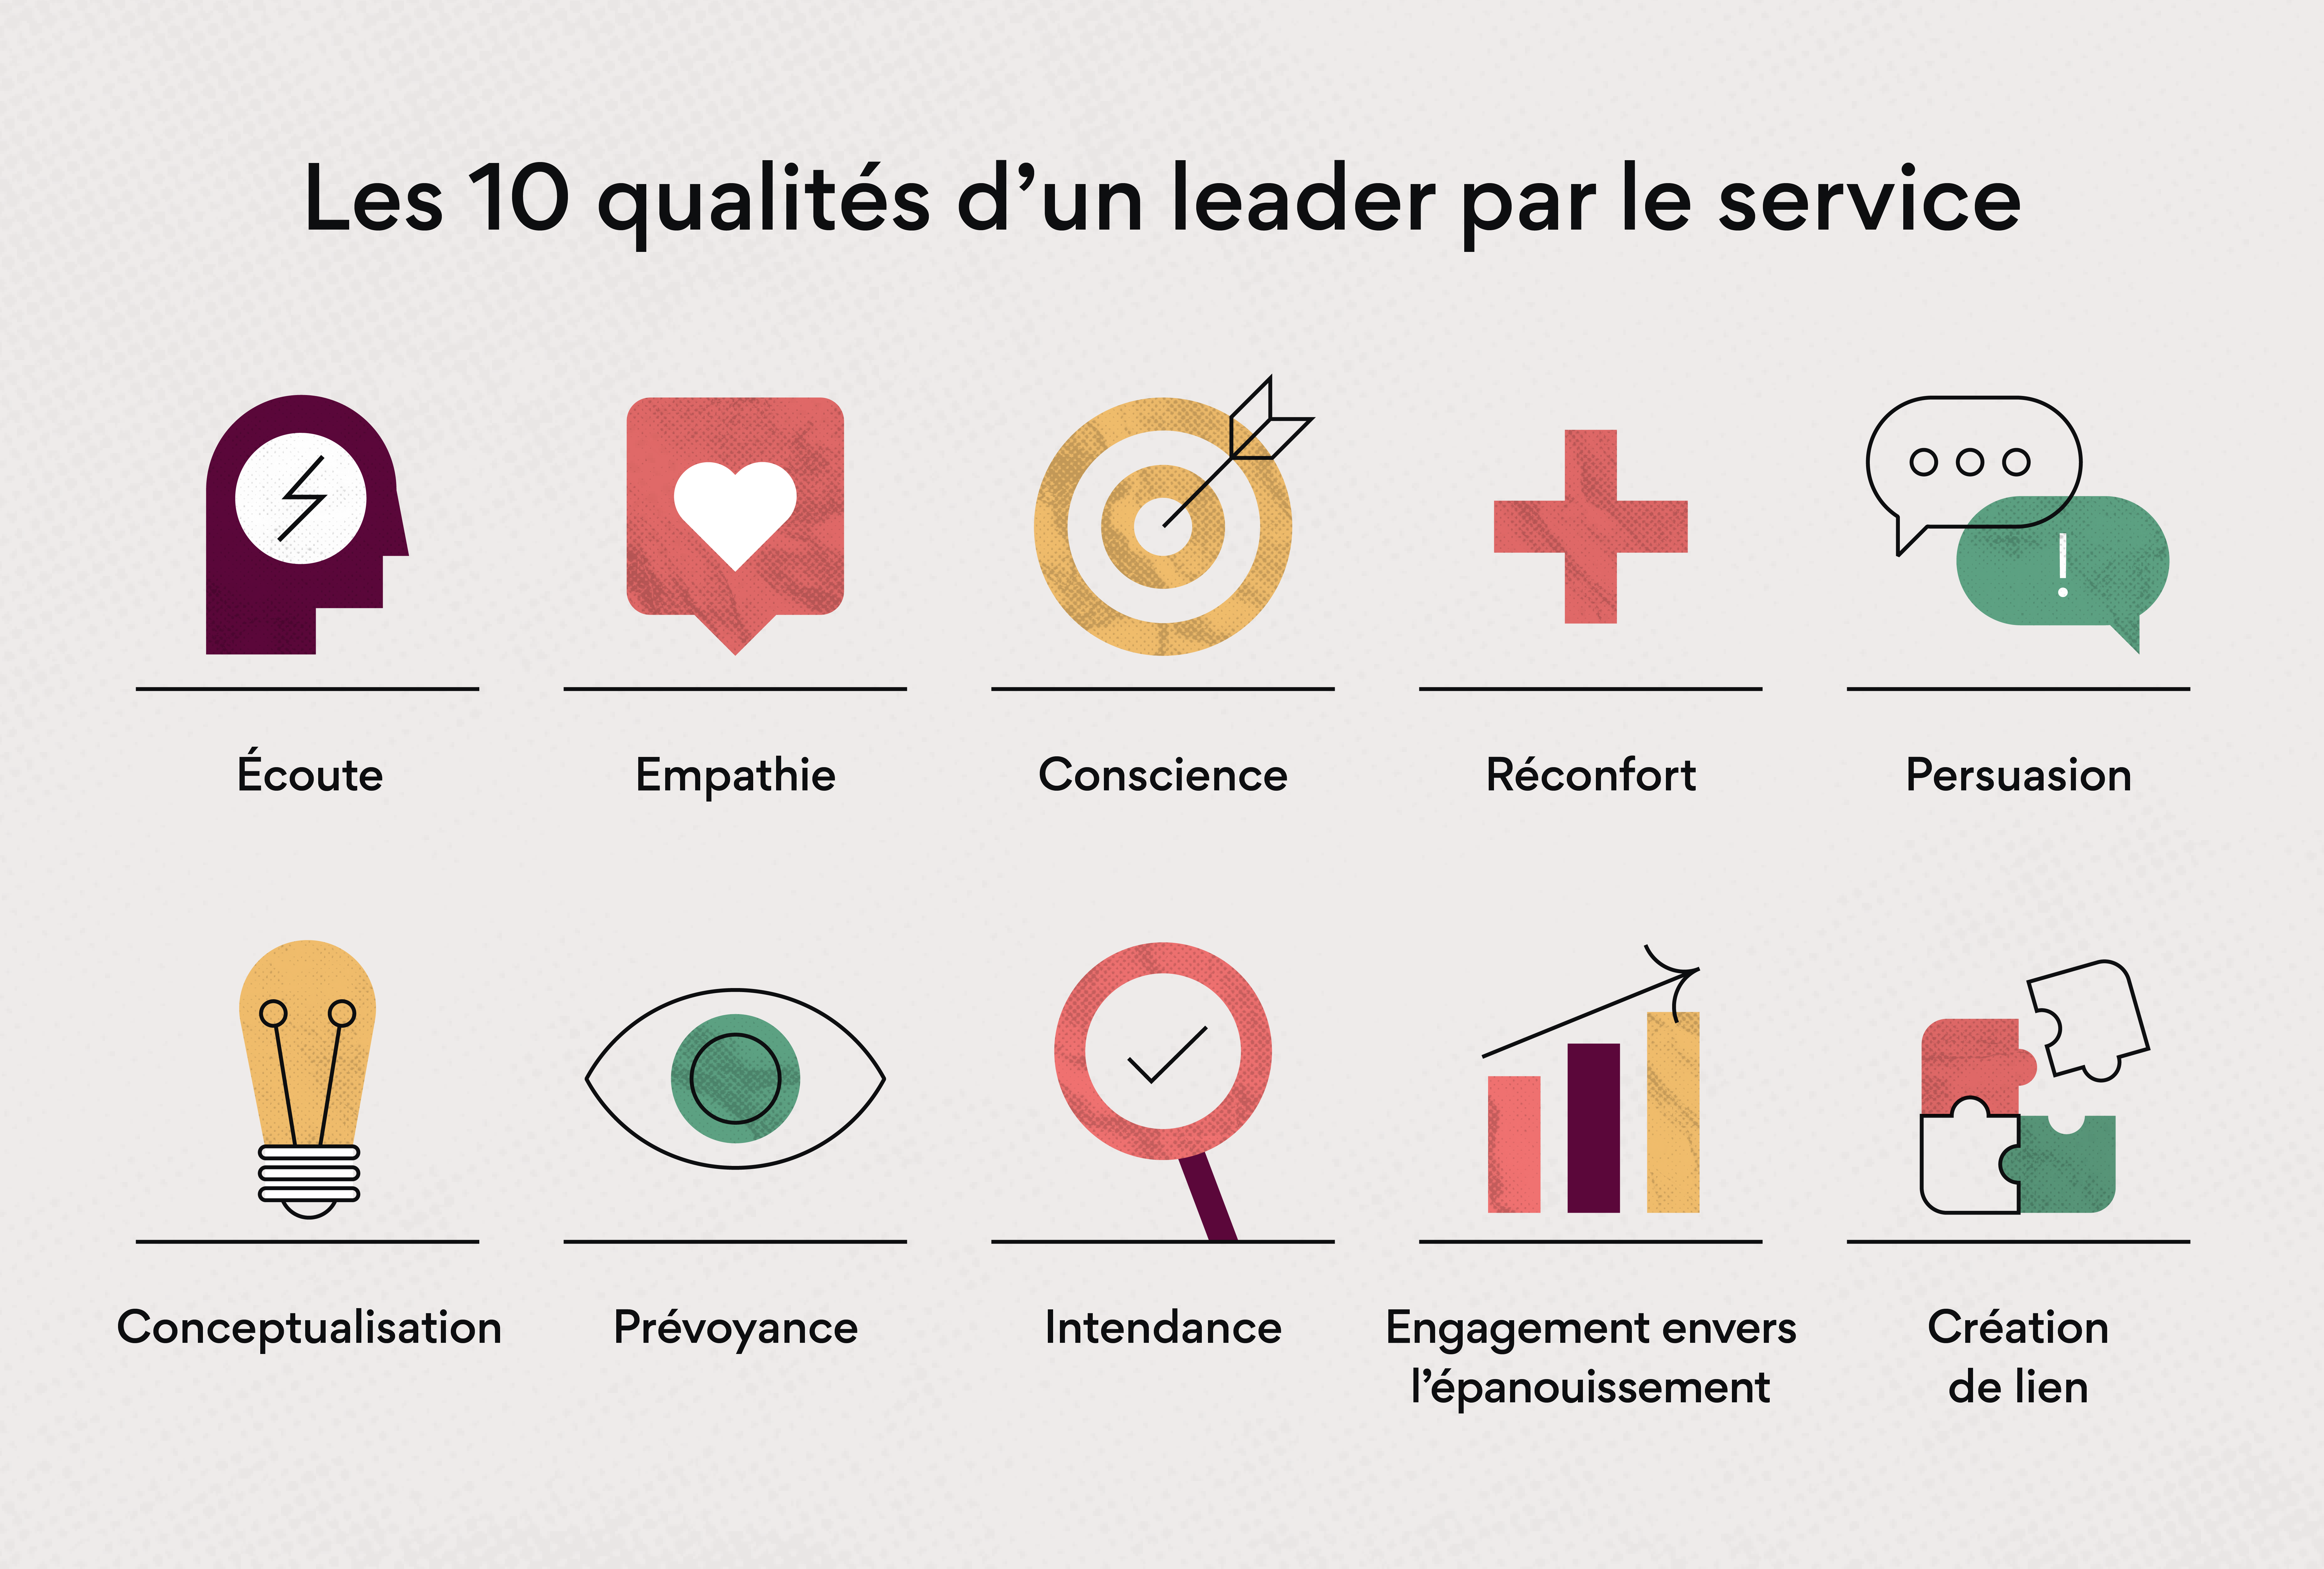 Les 10 qualités du leader par le service